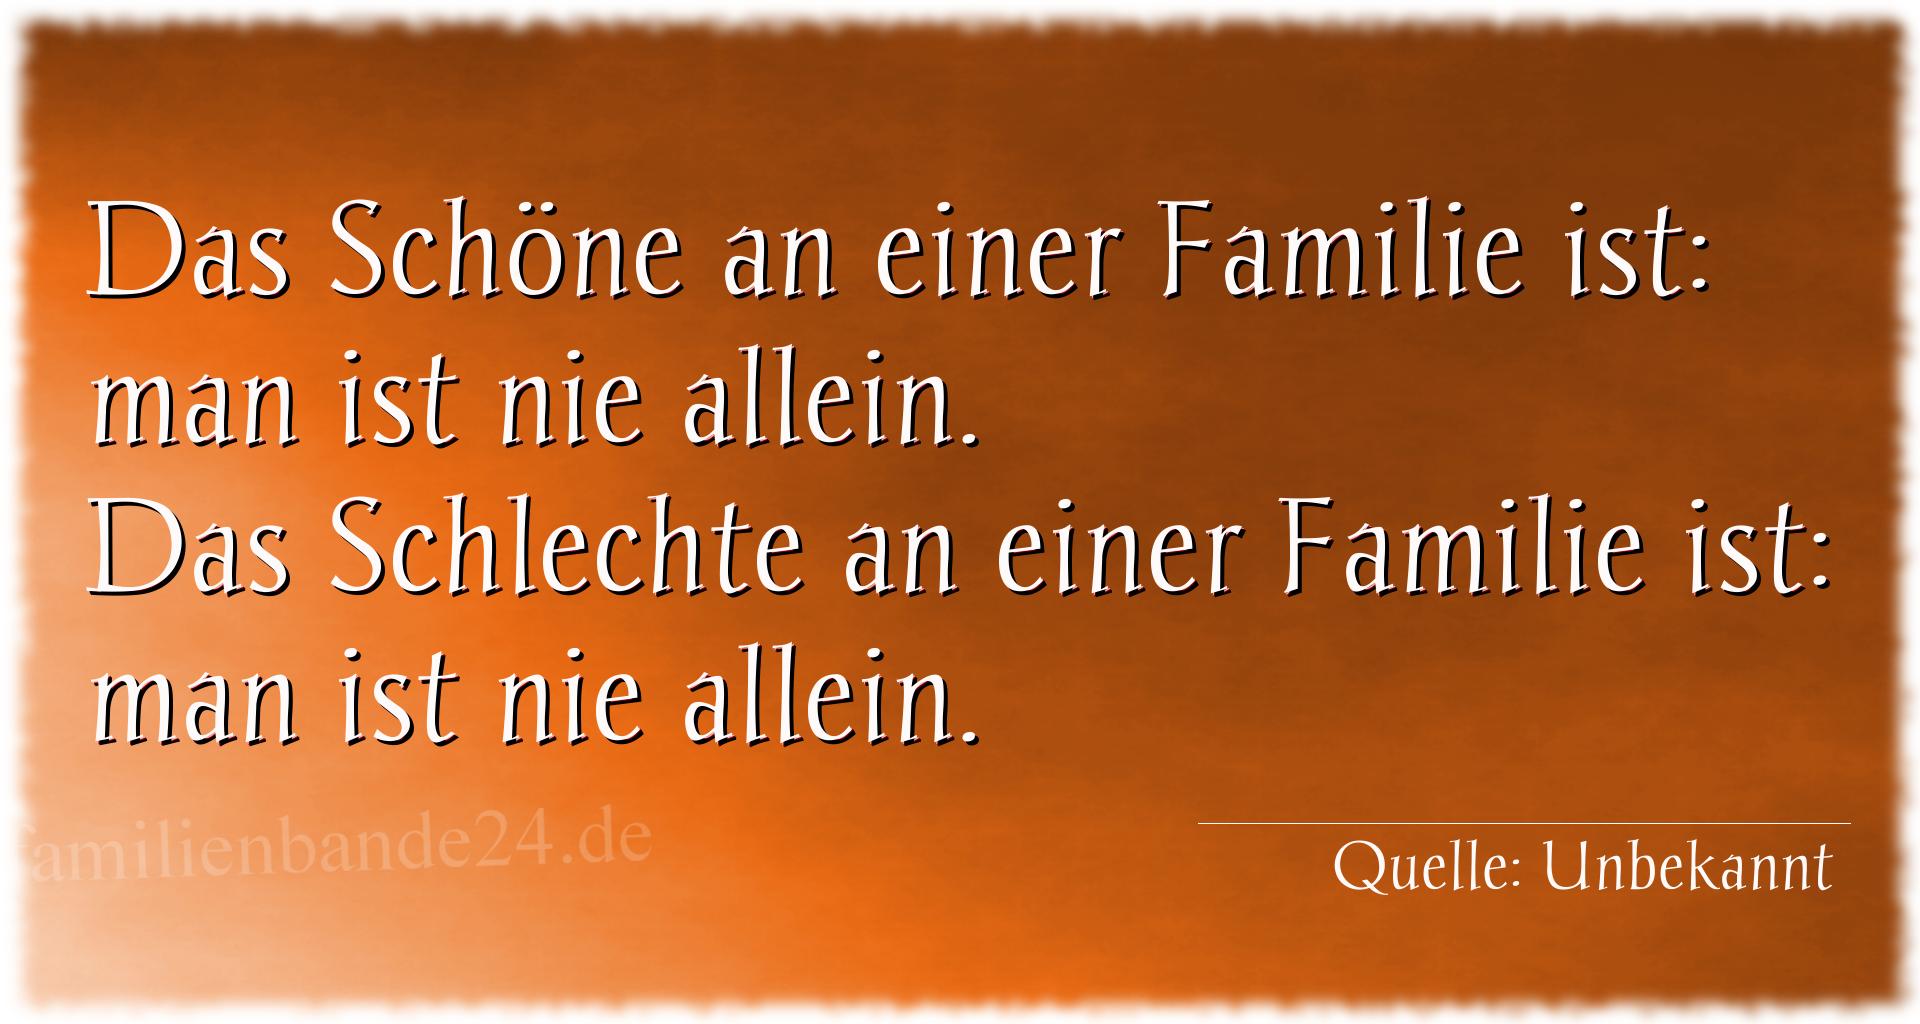 Spruch Nummer 1962: Das Schöne an einer Familie ist: man ist nie allein.
Das [...]